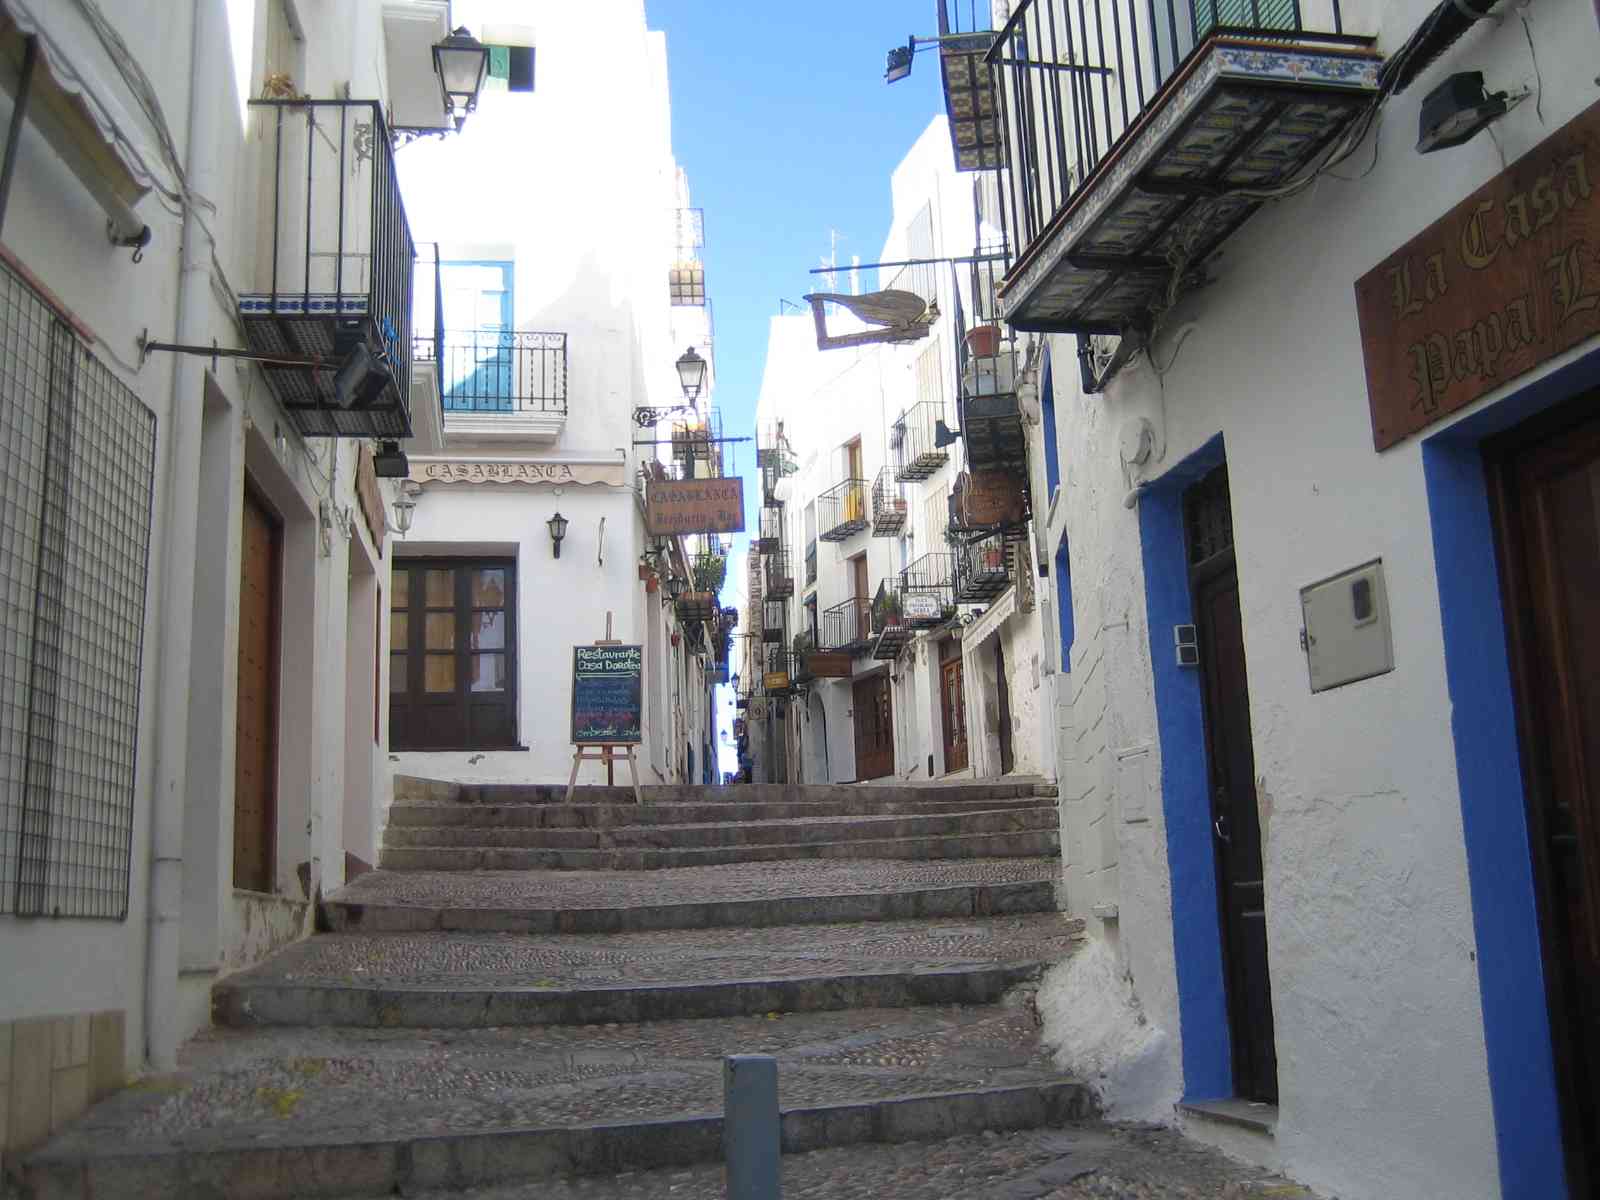 Foto: Las calles de Peñiscola muy bonitas.